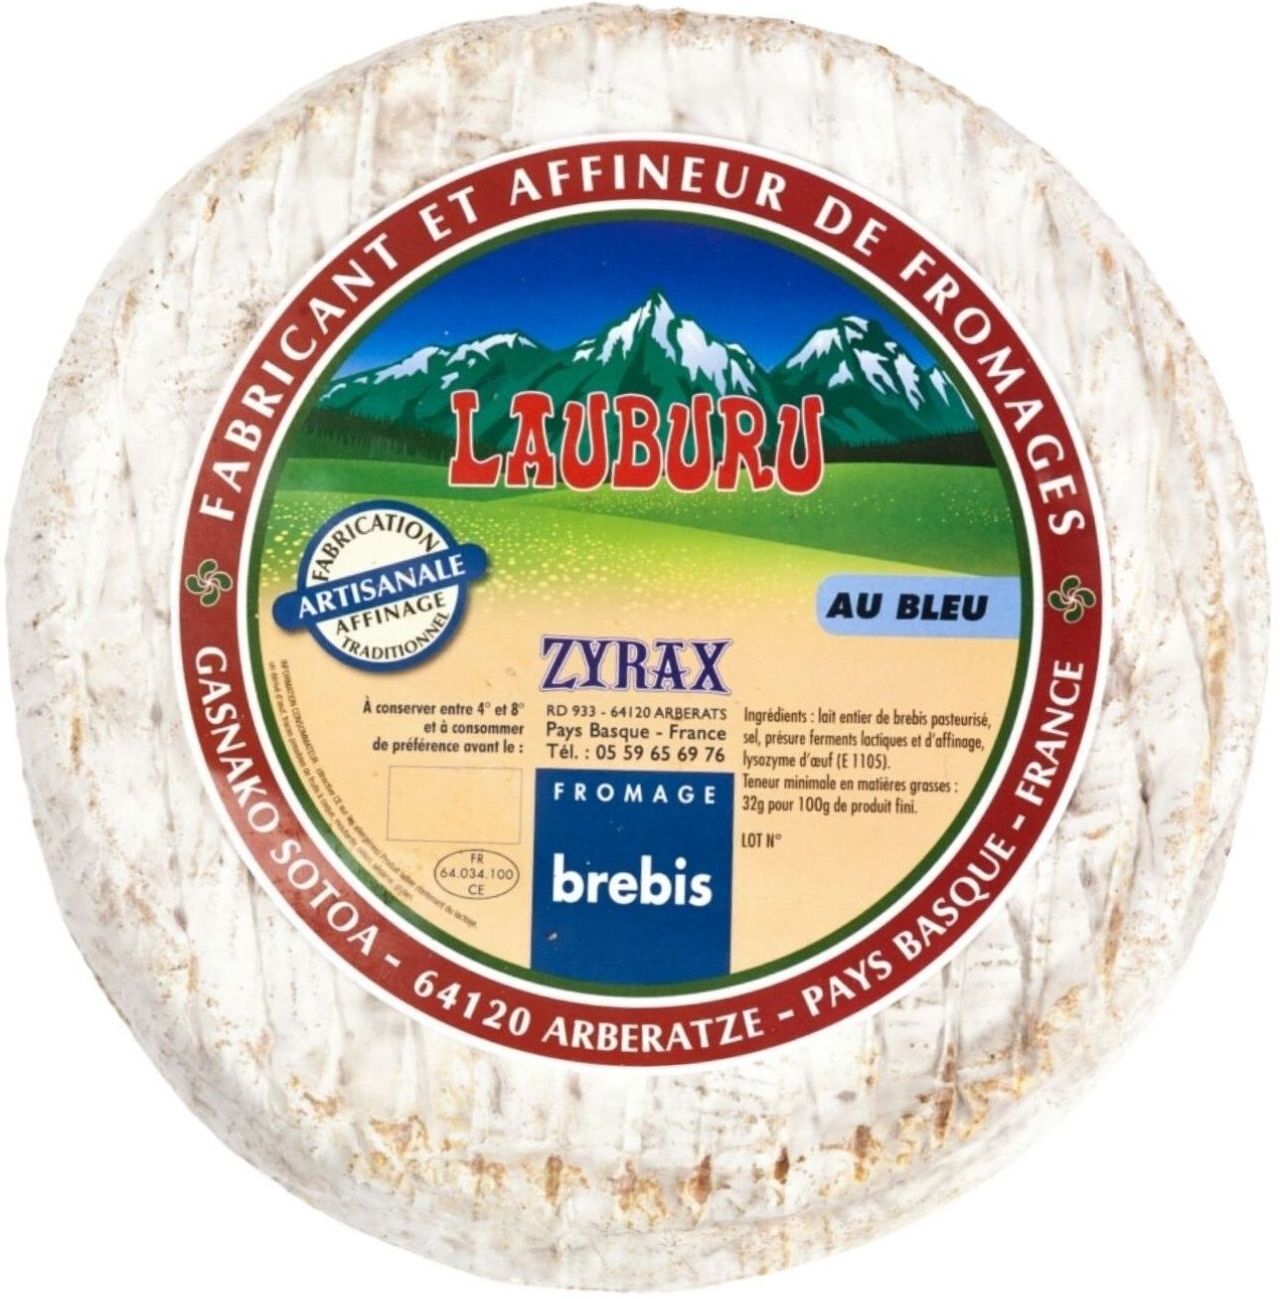 Brebis au Bleu-zyrax fromage-www.luxfood-shop.fr-